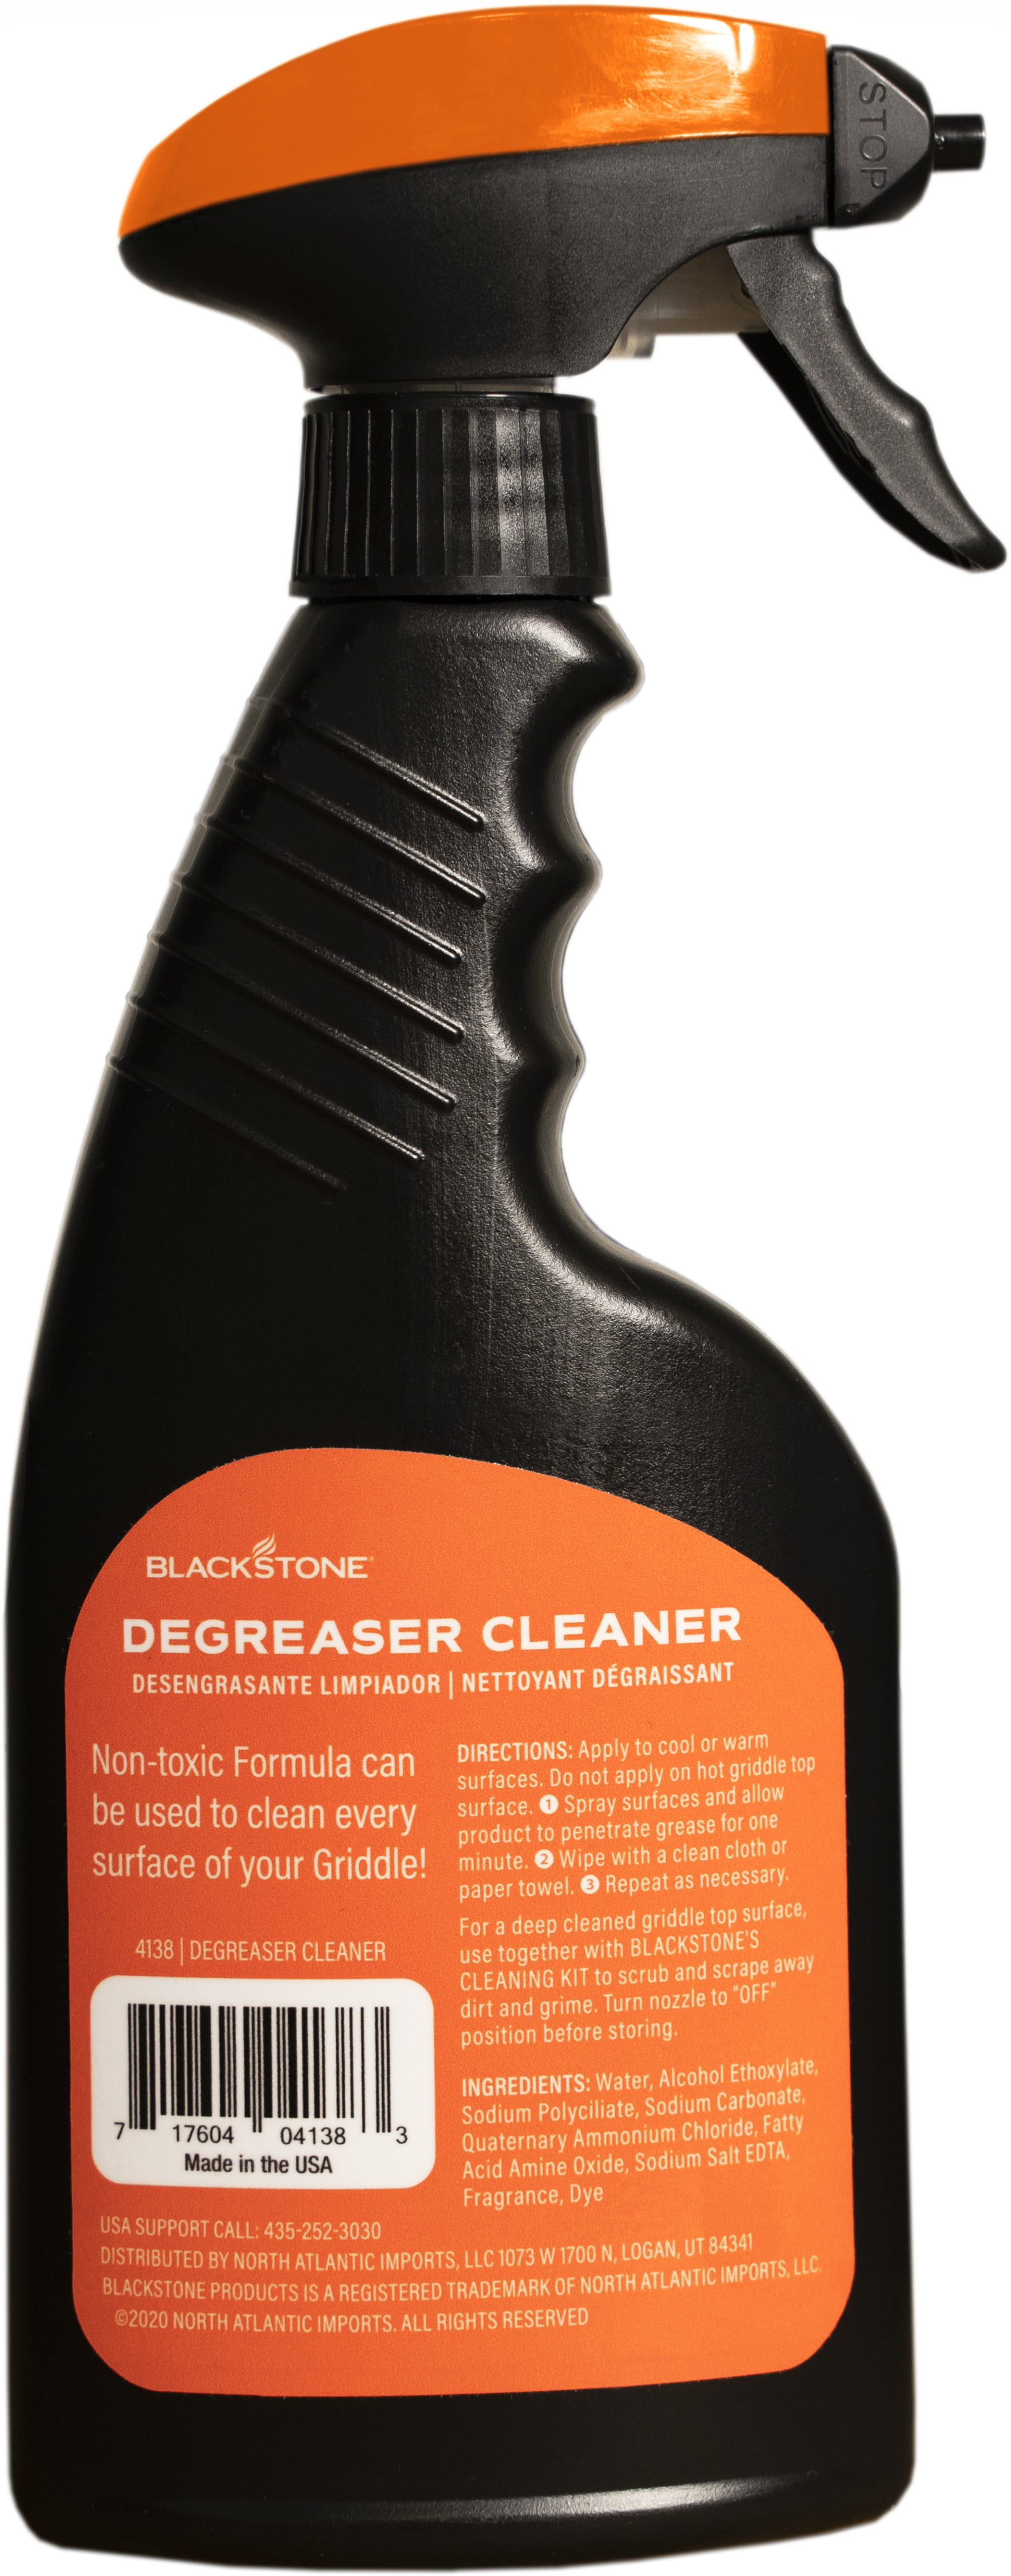 Blackstone Degreaser Cleaner 4163